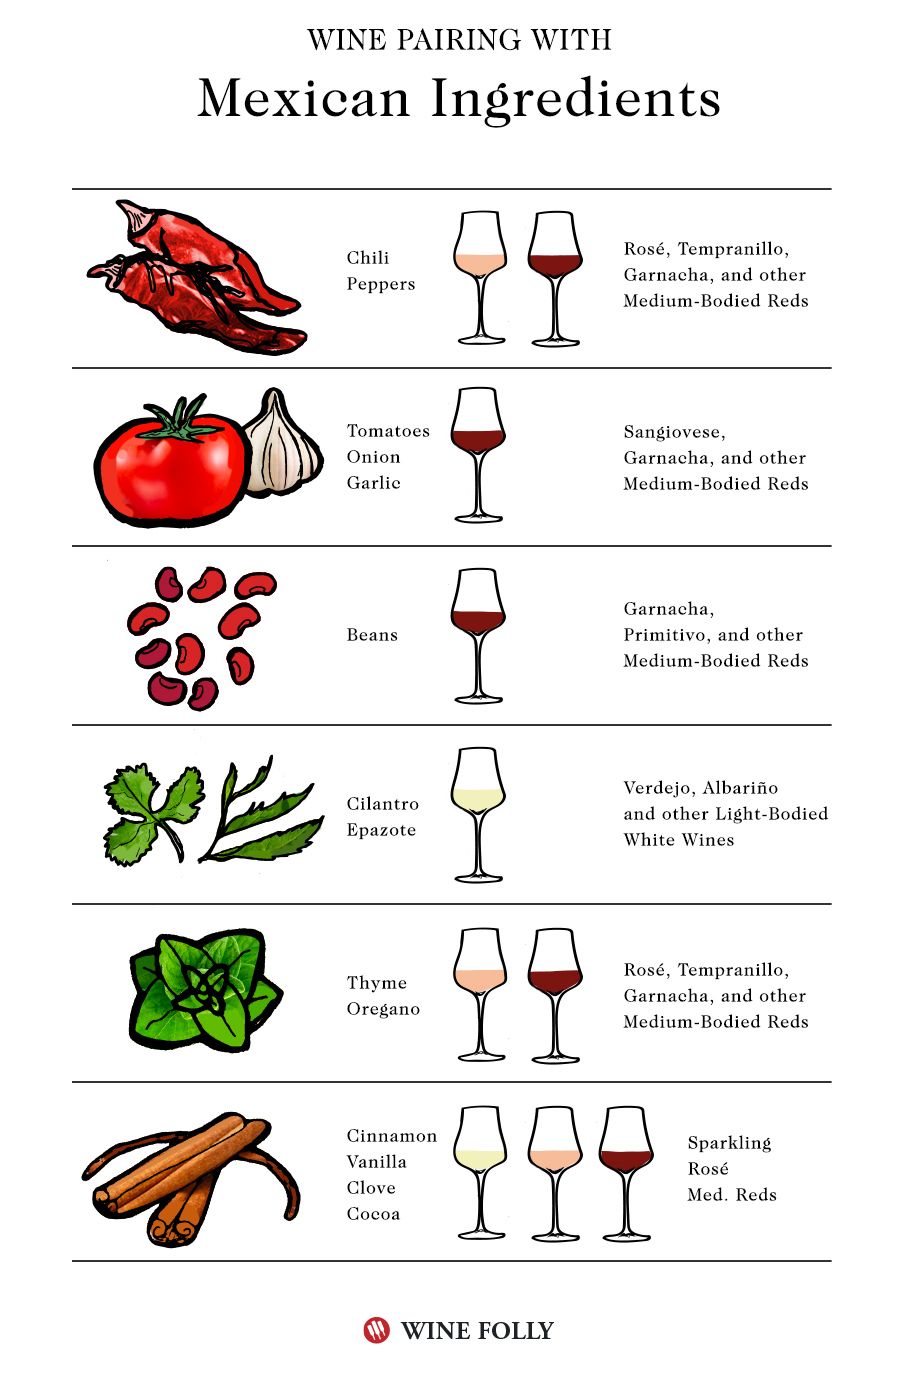 Accords mets-vins mexicains avec ingrédients - infographie par Wine Folly